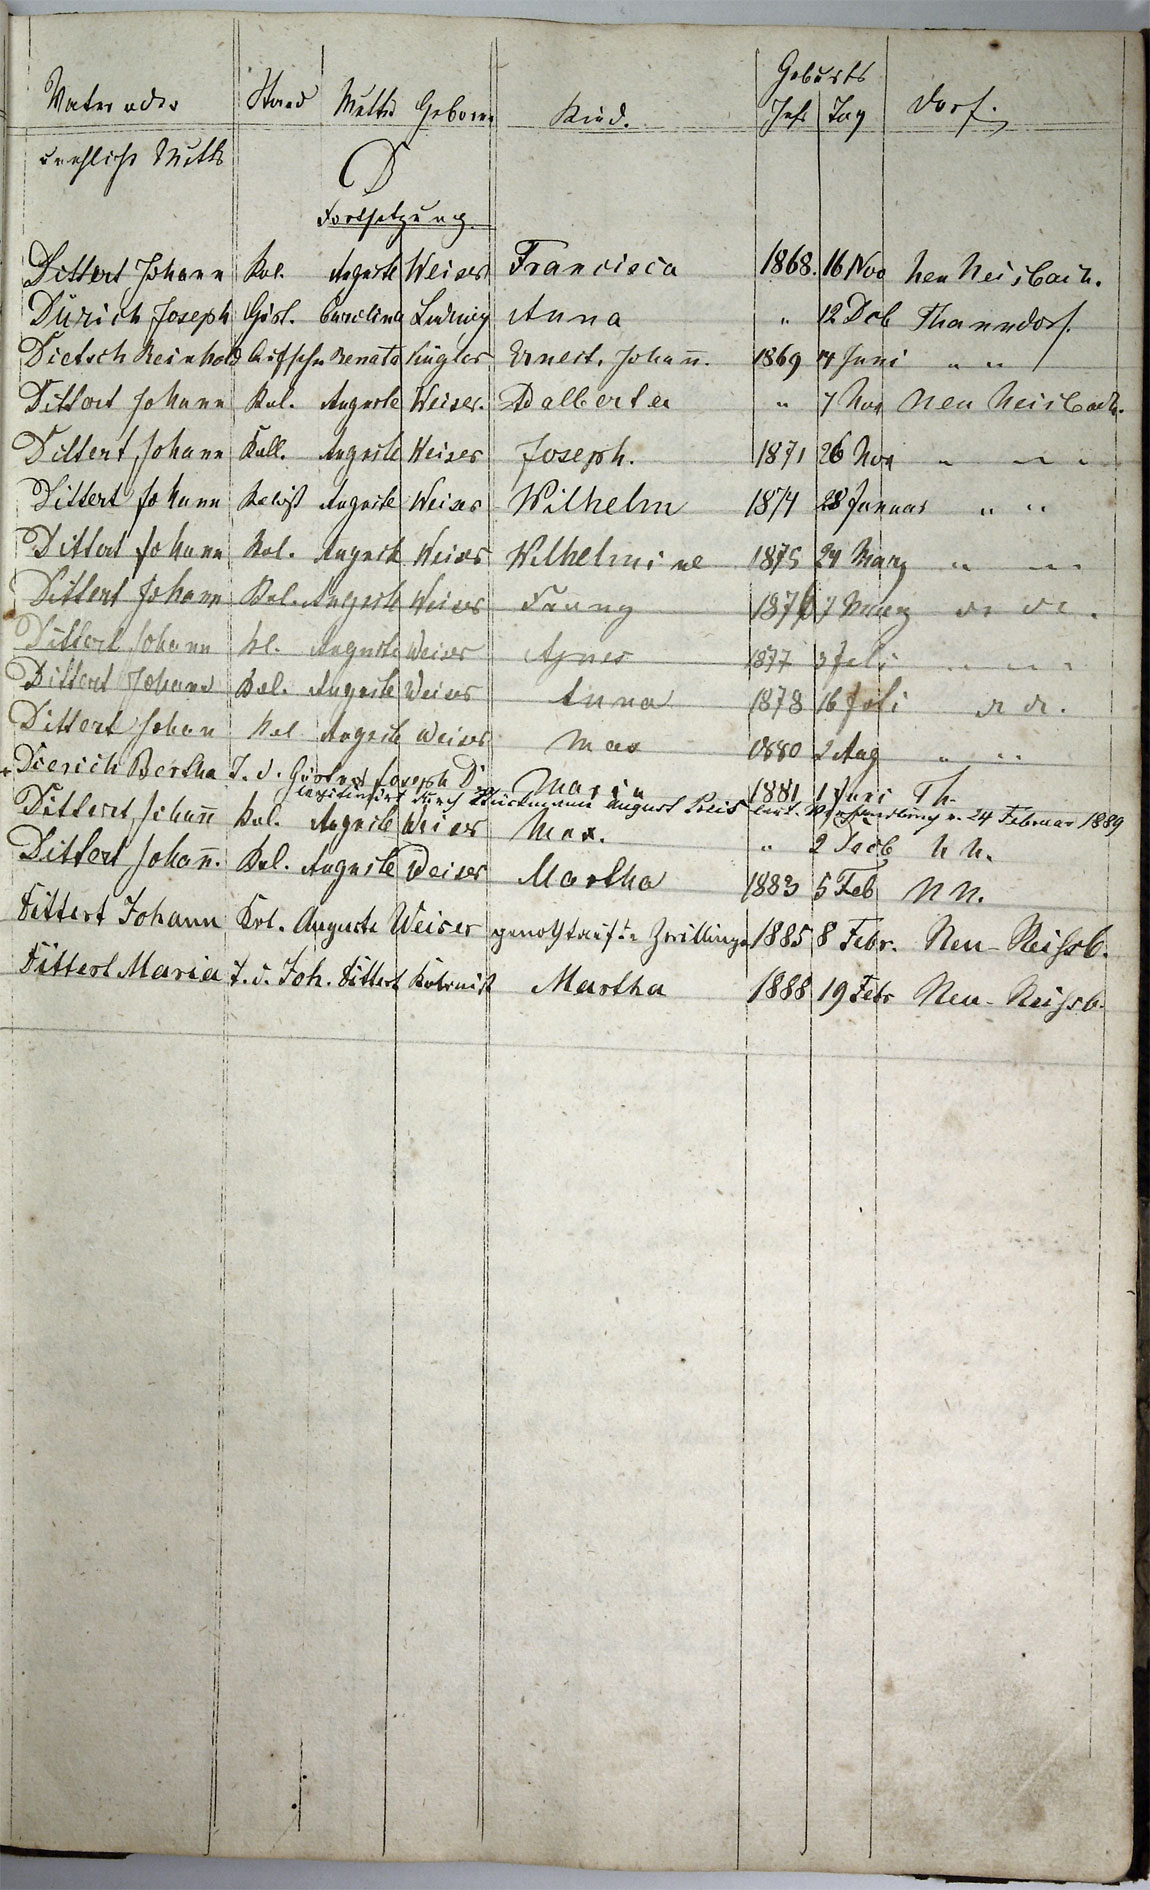 Taufregister 1770 - 1889 Seite 20